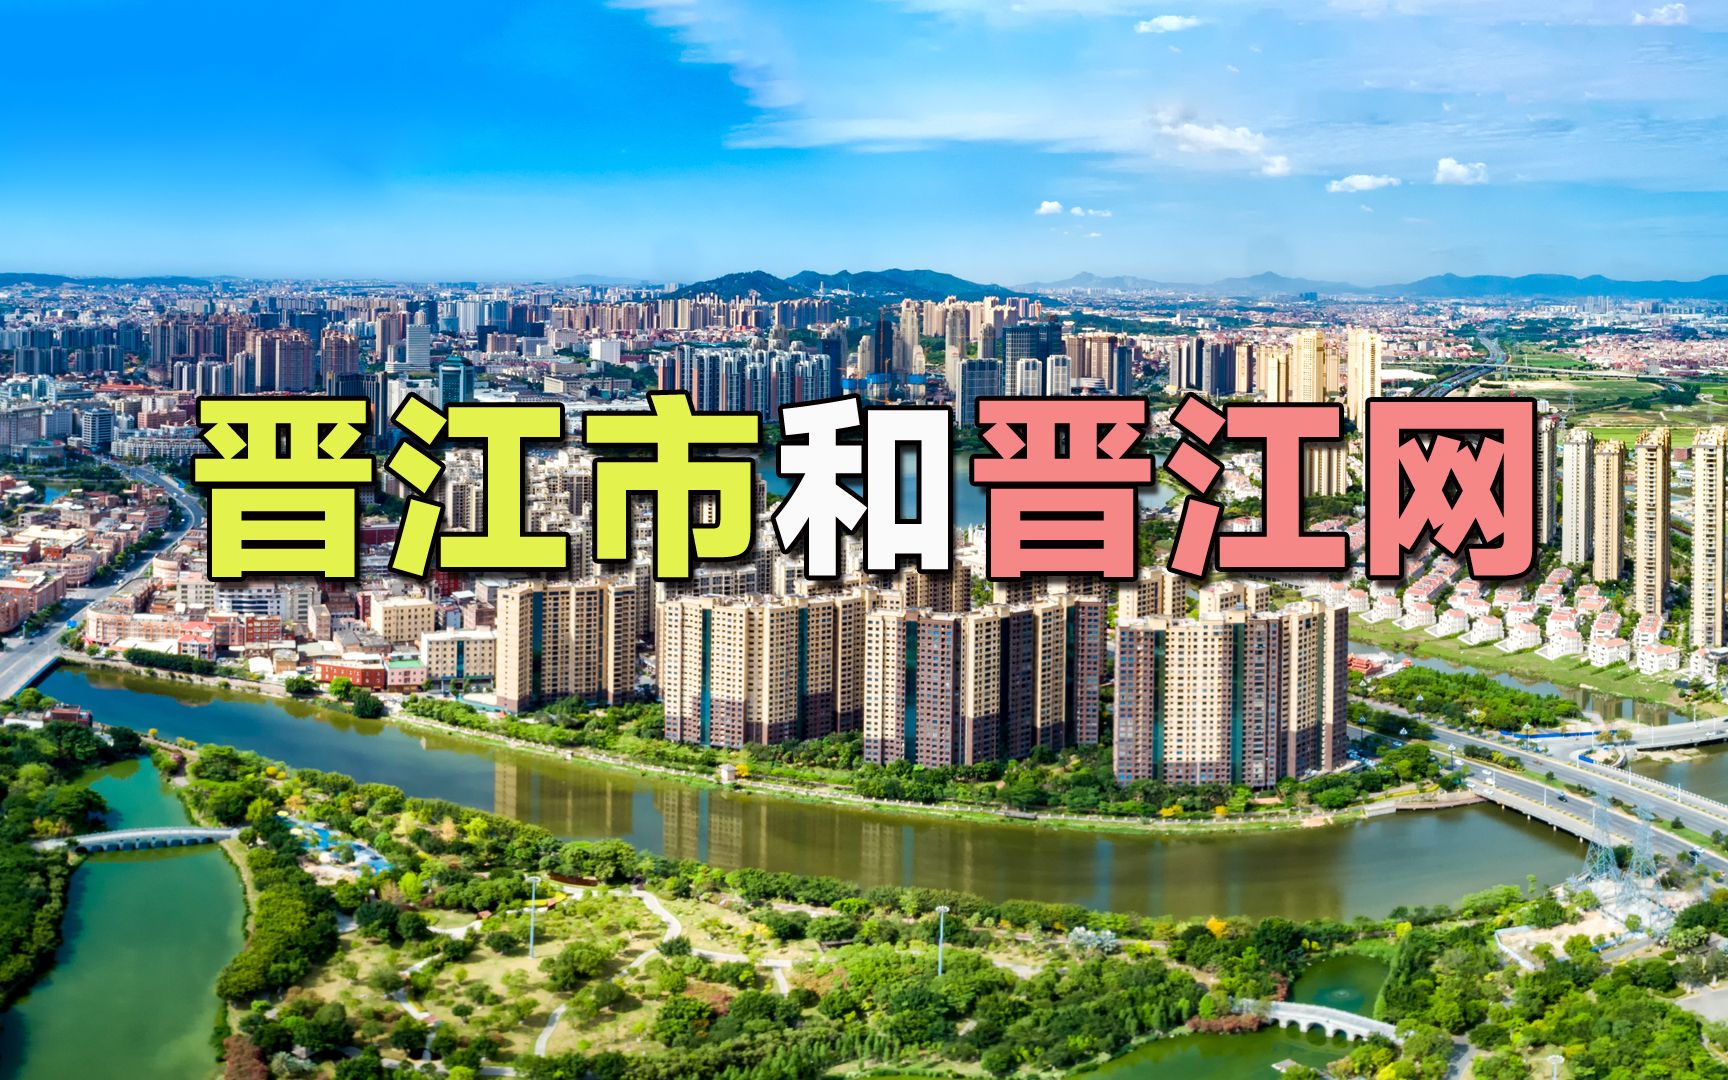 晋江文学和晋江市有什么关系吗 晋江文学城和泉州晋江的关系